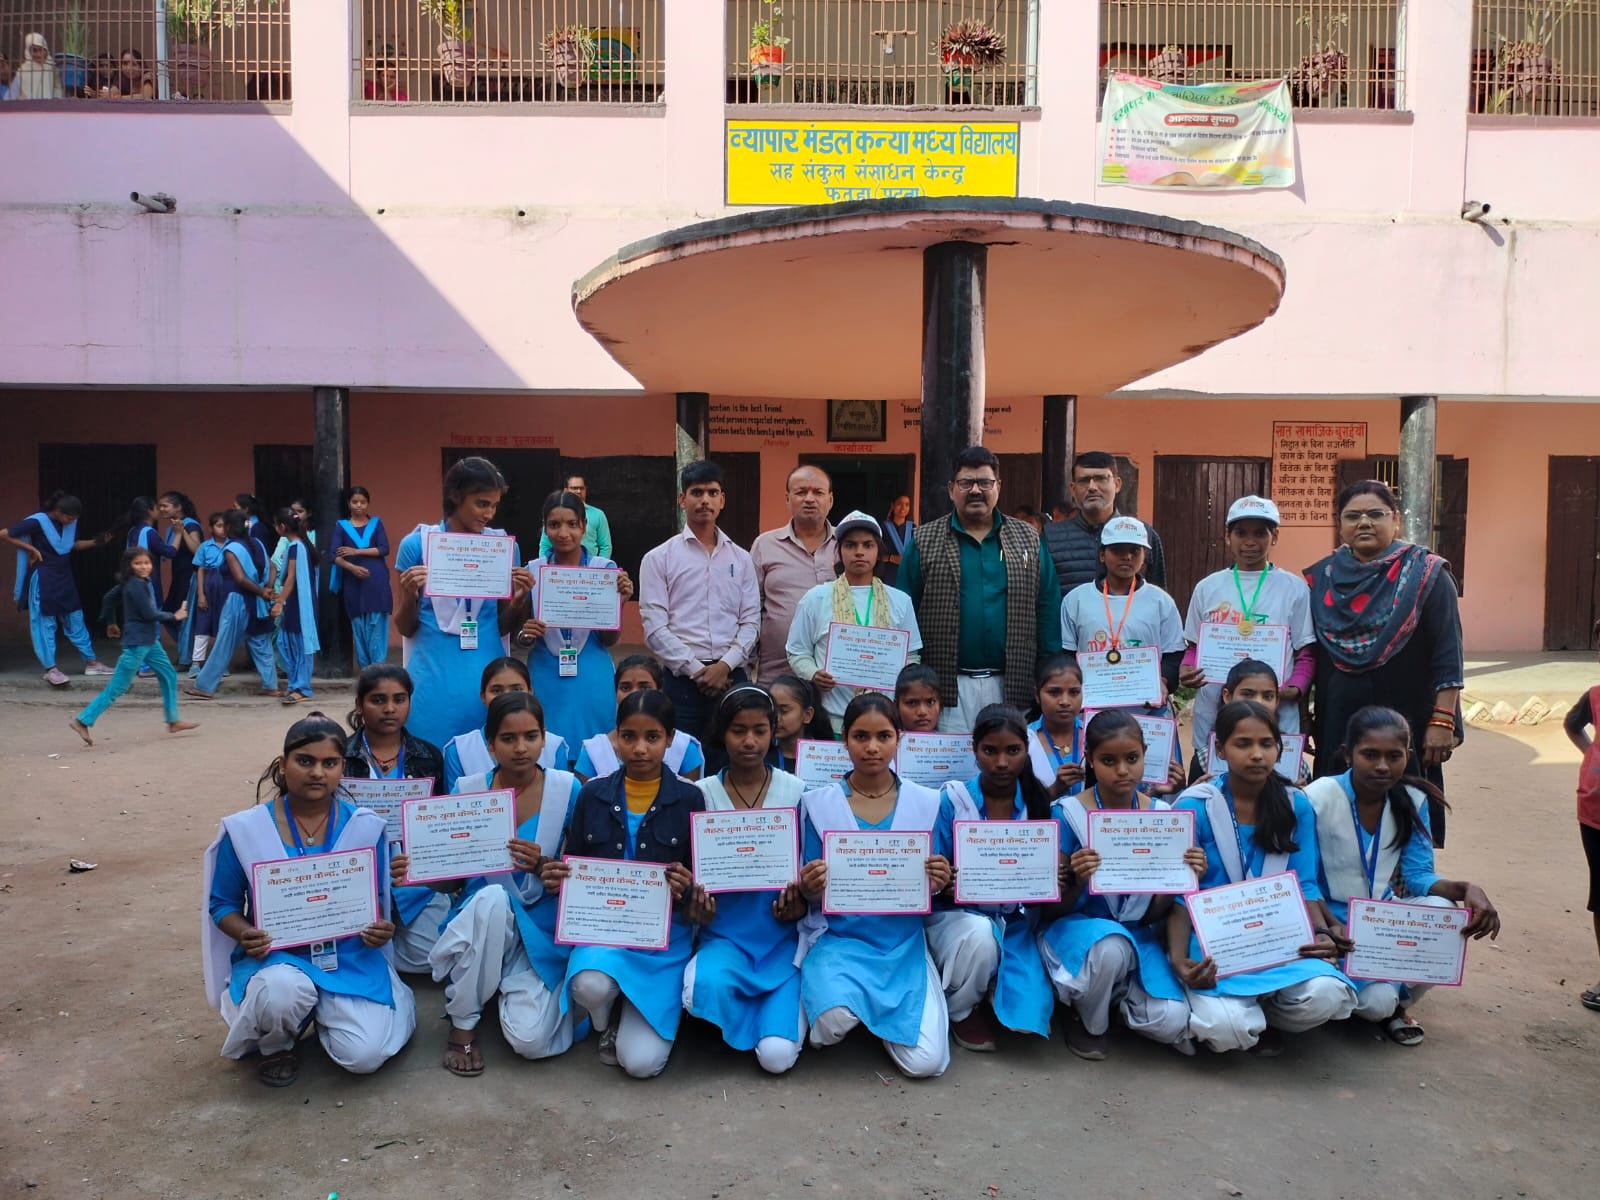 युवा कार्यक्रम एवं खेल मंत्रालय भारत सरकार द्वारा नेहरू युवा केंद्र नारी शक्ति फिटनेस दौड़ का किया गया आयोजन